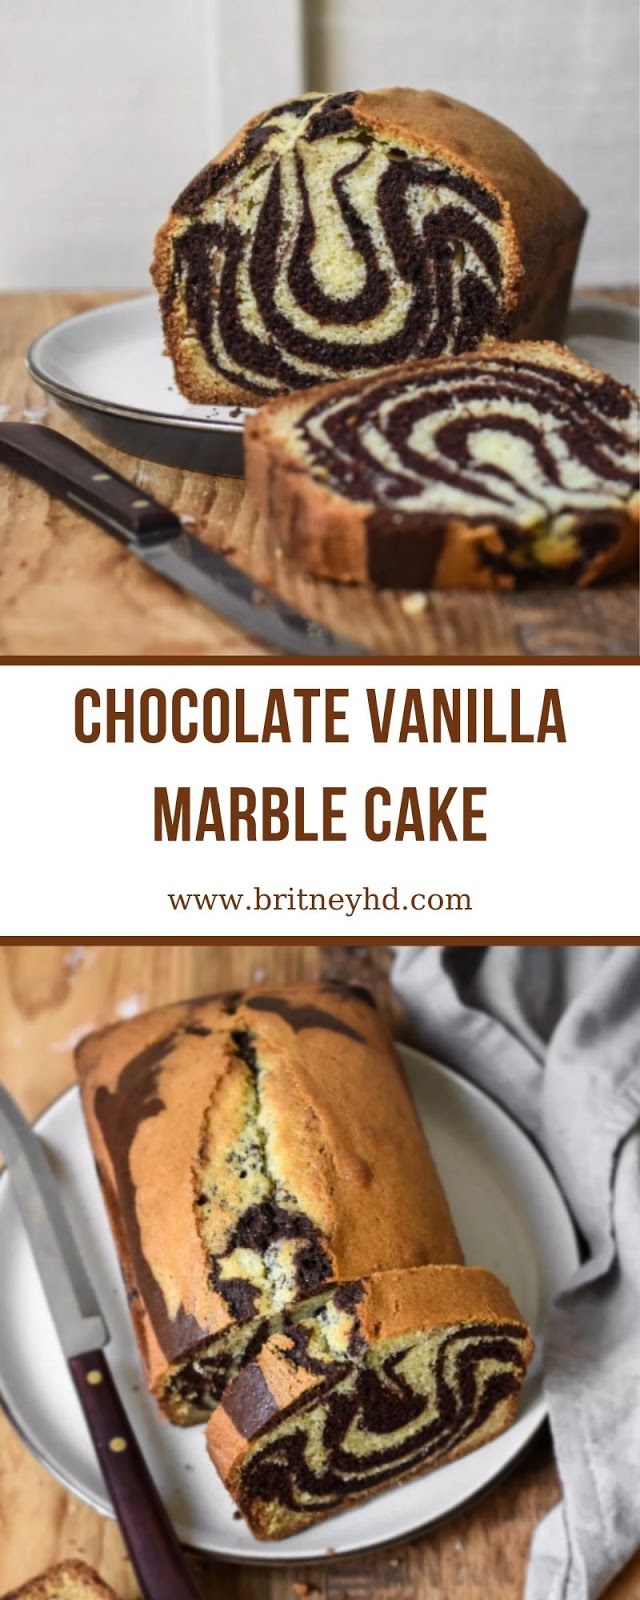 CHOCOLATE VANILLA MARBLE CAKE